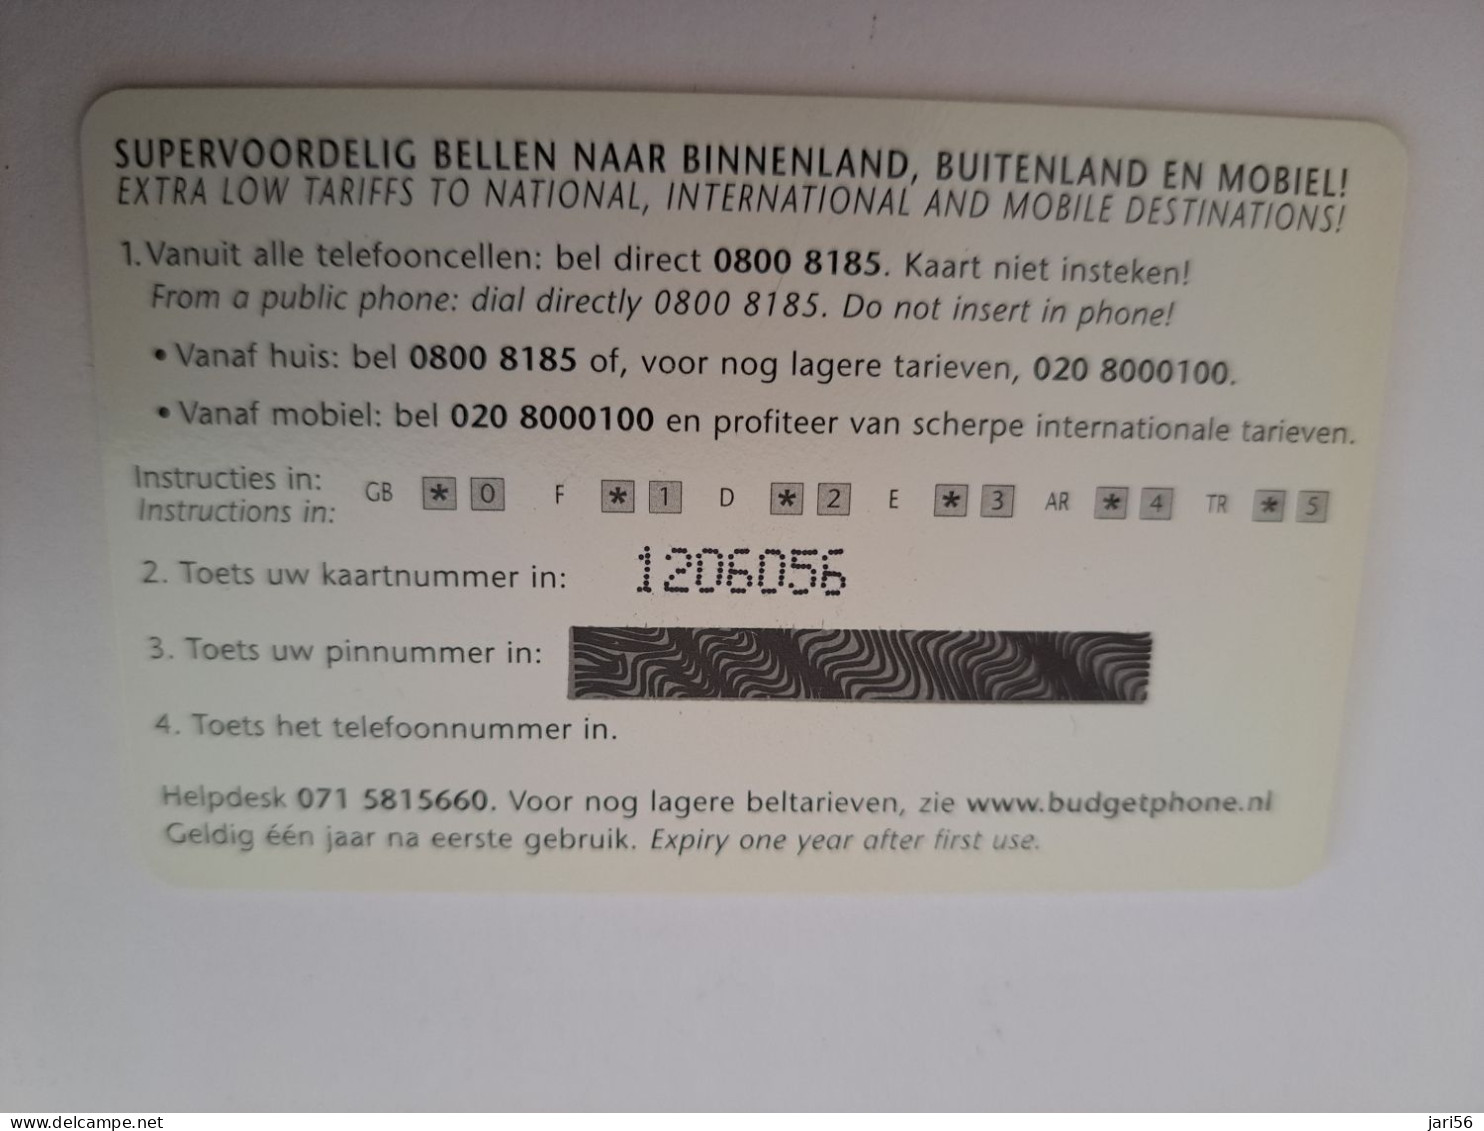 NETHERLANDS /  PREPAID/ NTC CLUB/ MEMBERCARD / EURO COIN ON CARD /  €  1,-   - MINT  CARD  ** 14867** - Públicas